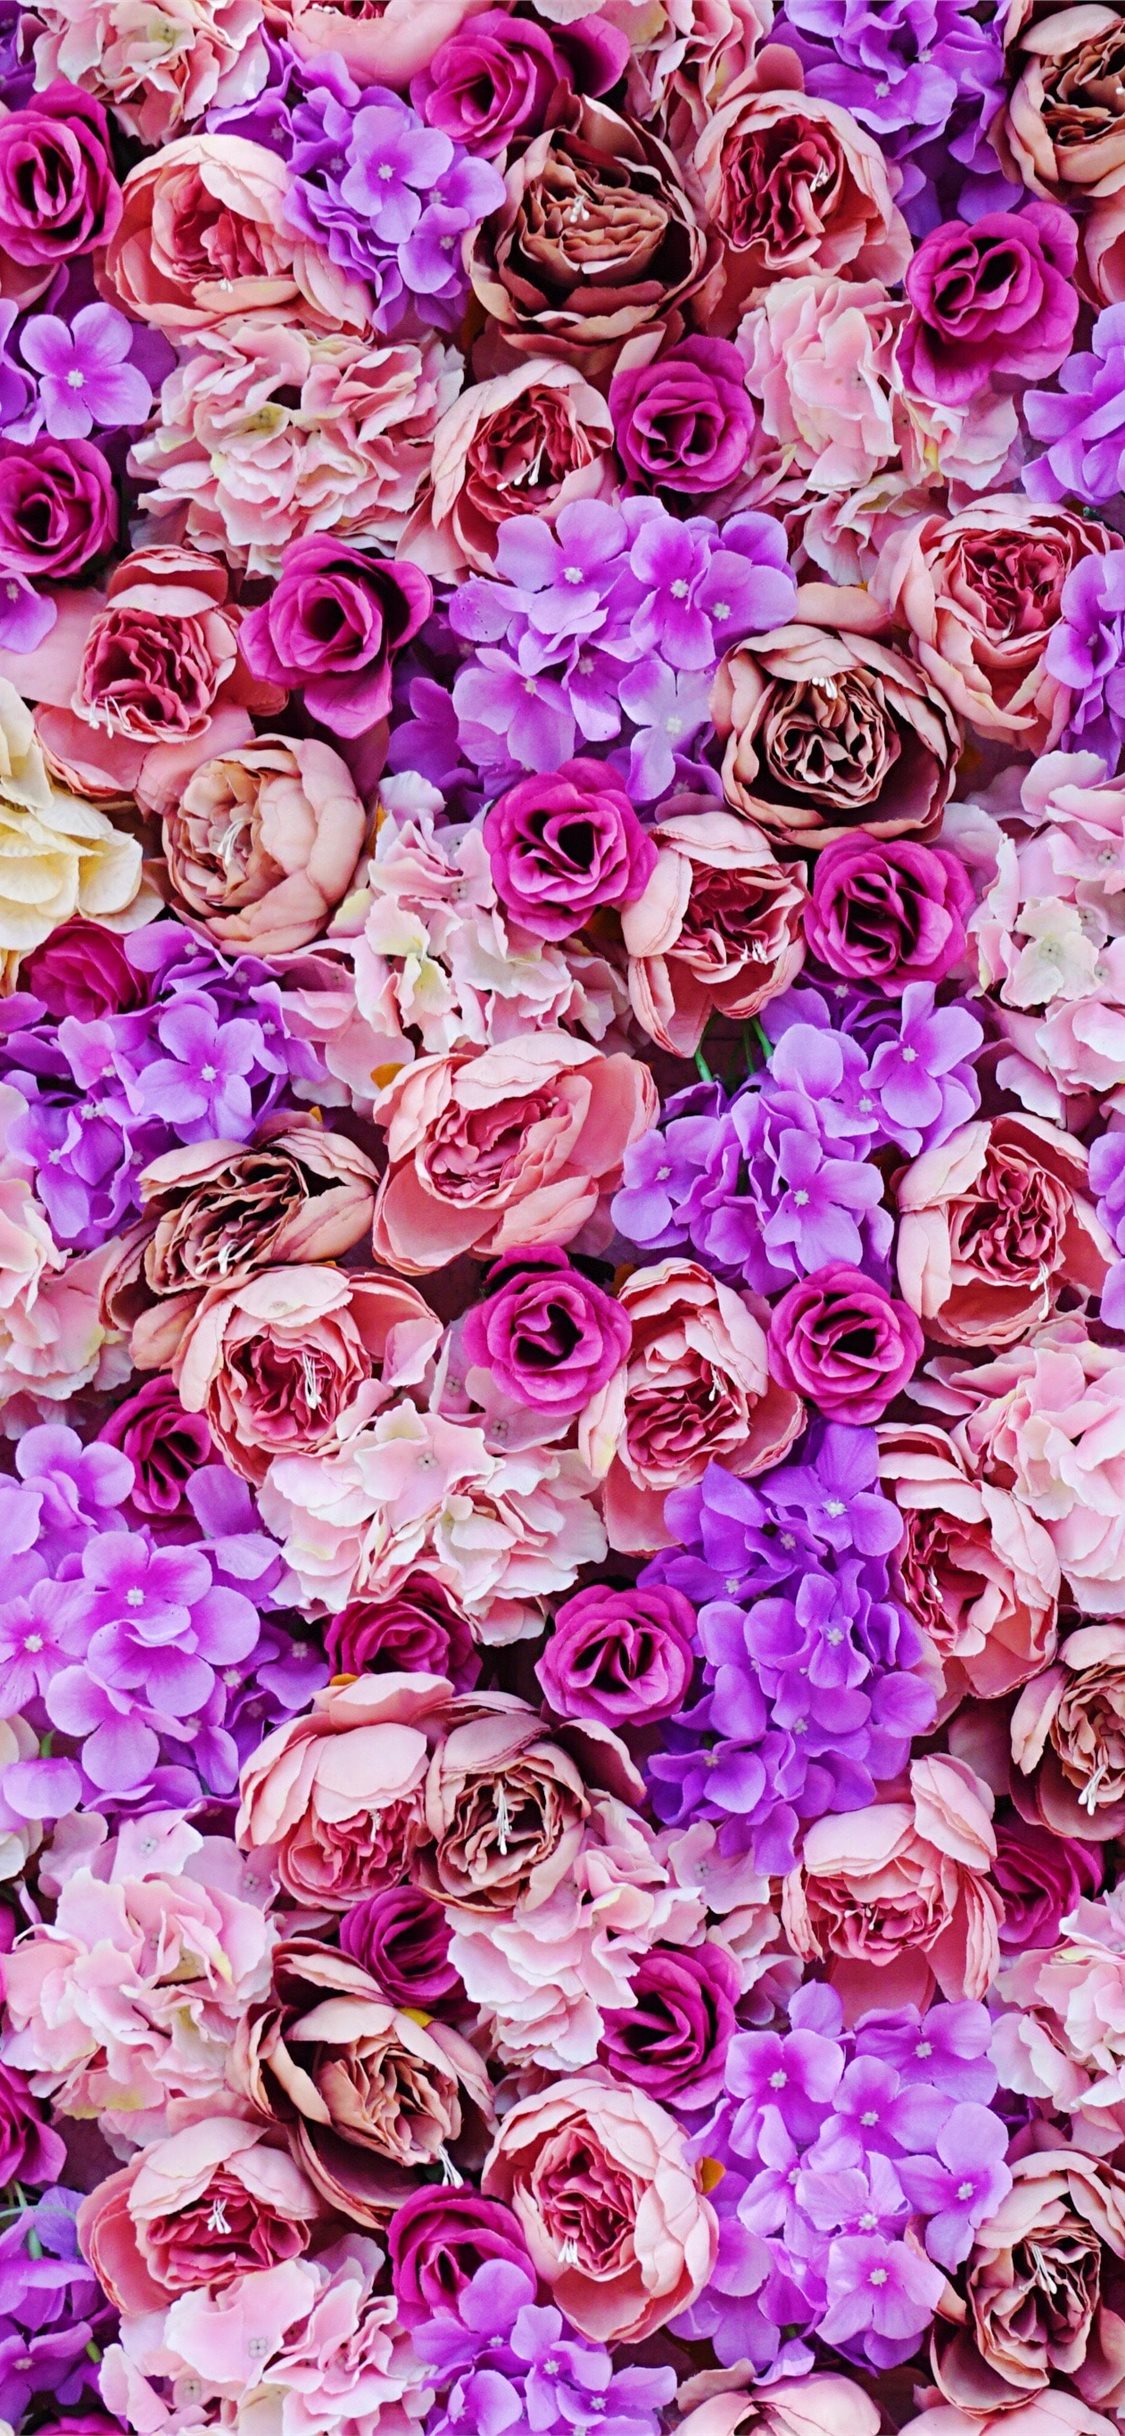 Hoa tím hồng iPhone 11 Wallpapers: Khám phá sức cuốn hút của hoa tím hồng điện thoại Iphone 11 Wallpapers miễn phí tuyệt đẹp! Hãy tải về những hình nền hoa tím hồng này để tạo nên một không gian màu sắc thanh tao và dịu nhẹ cho thiết bị của bạn.